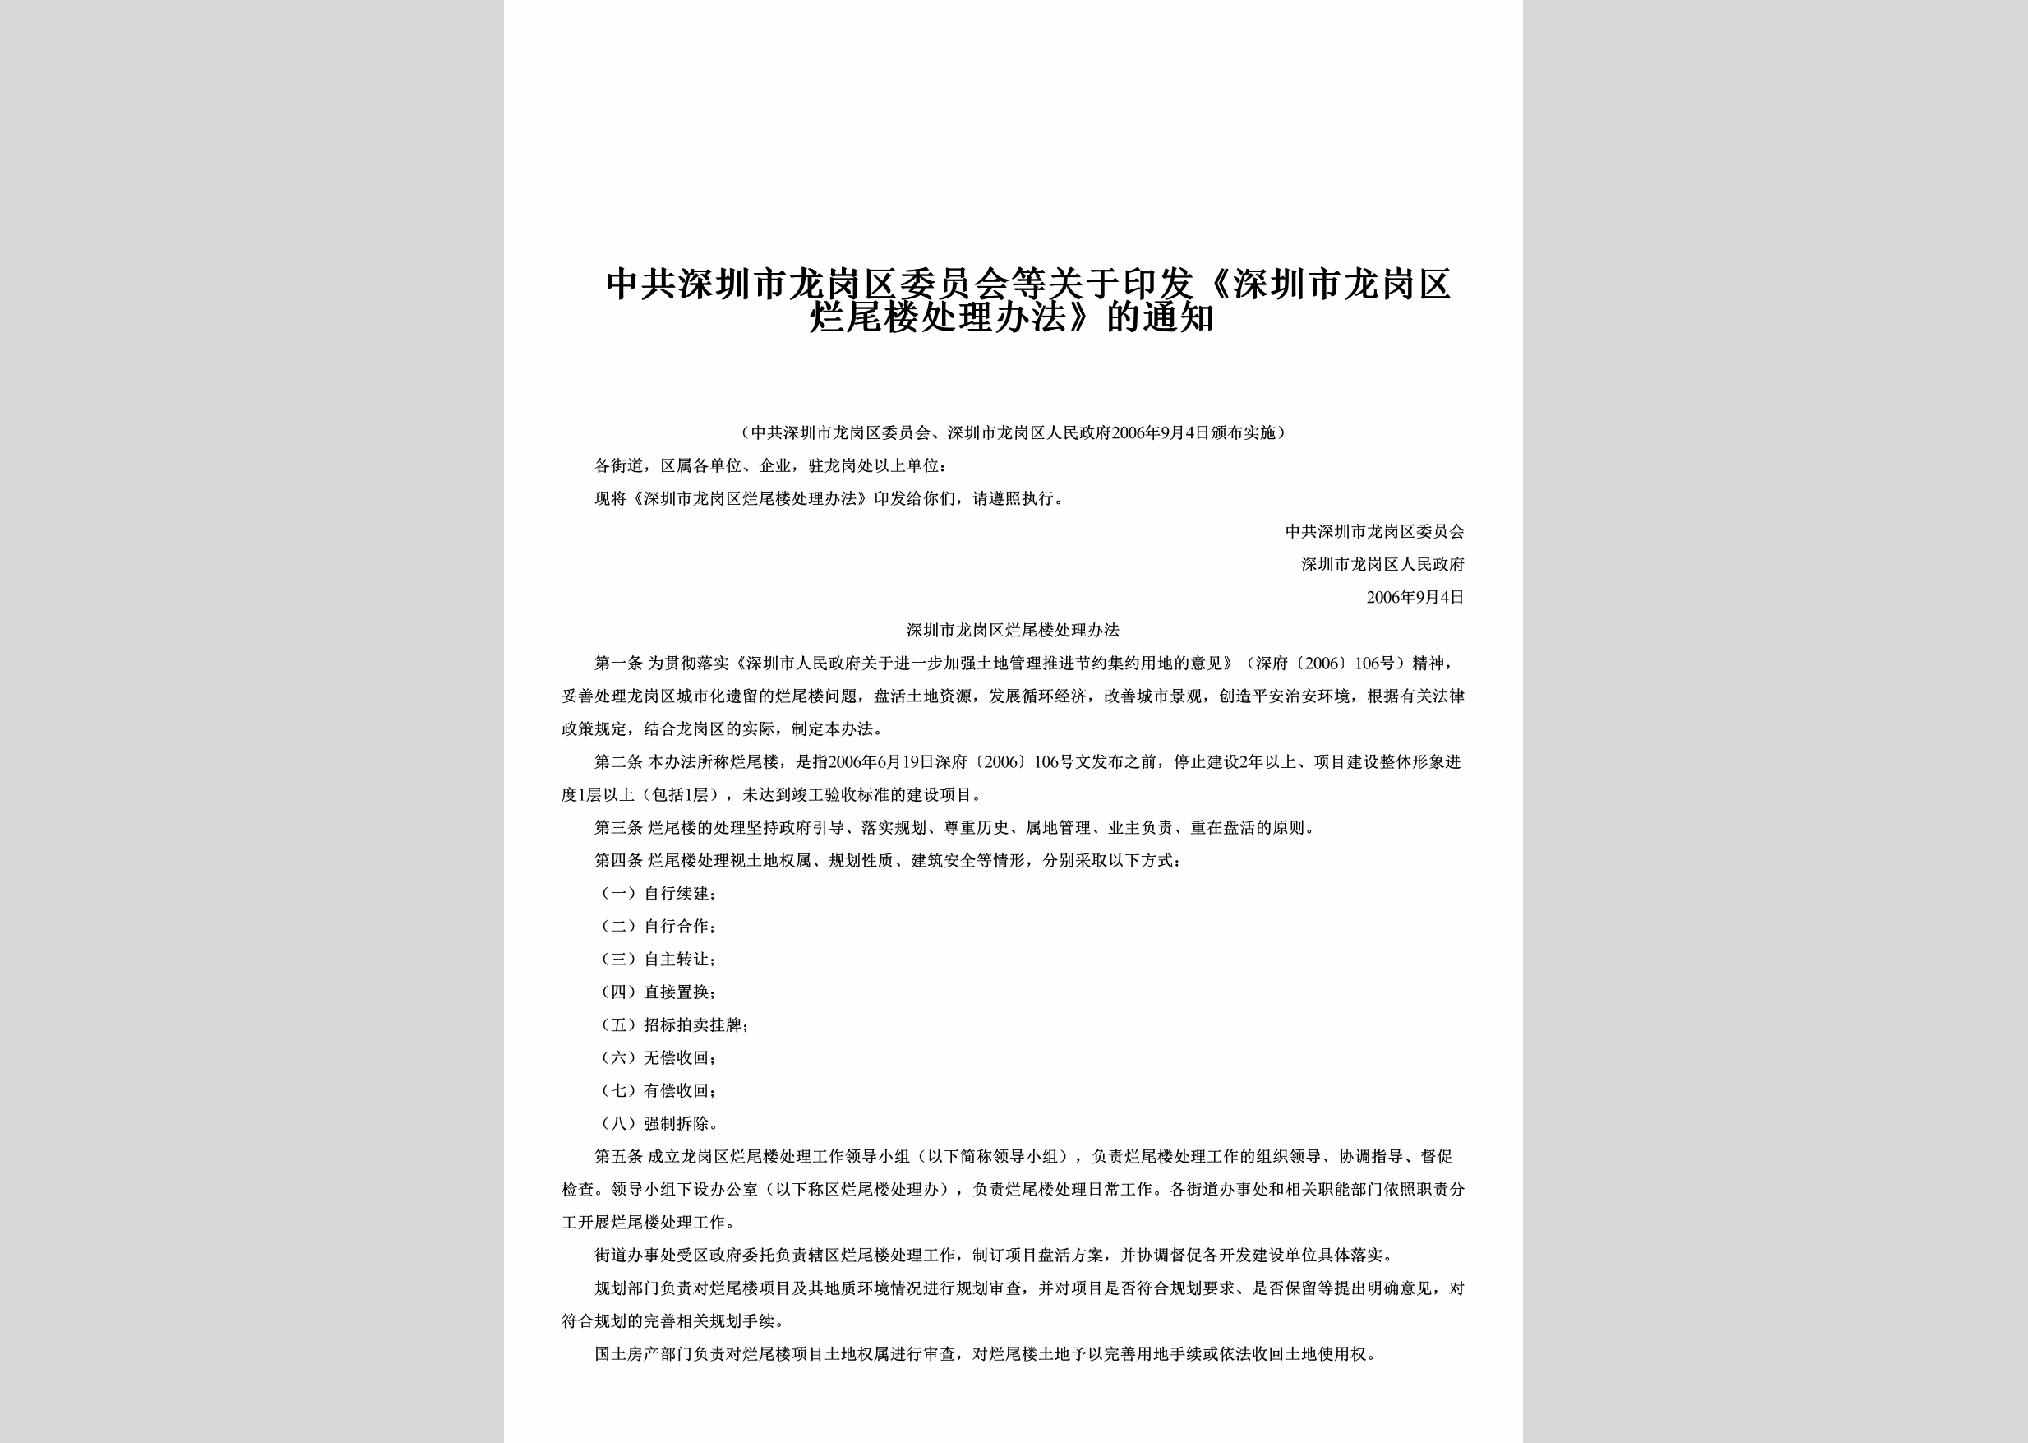 GD-LWLCLFF-2006：关于印发《深圳市龙岗区烂尾楼处理办法》的通知